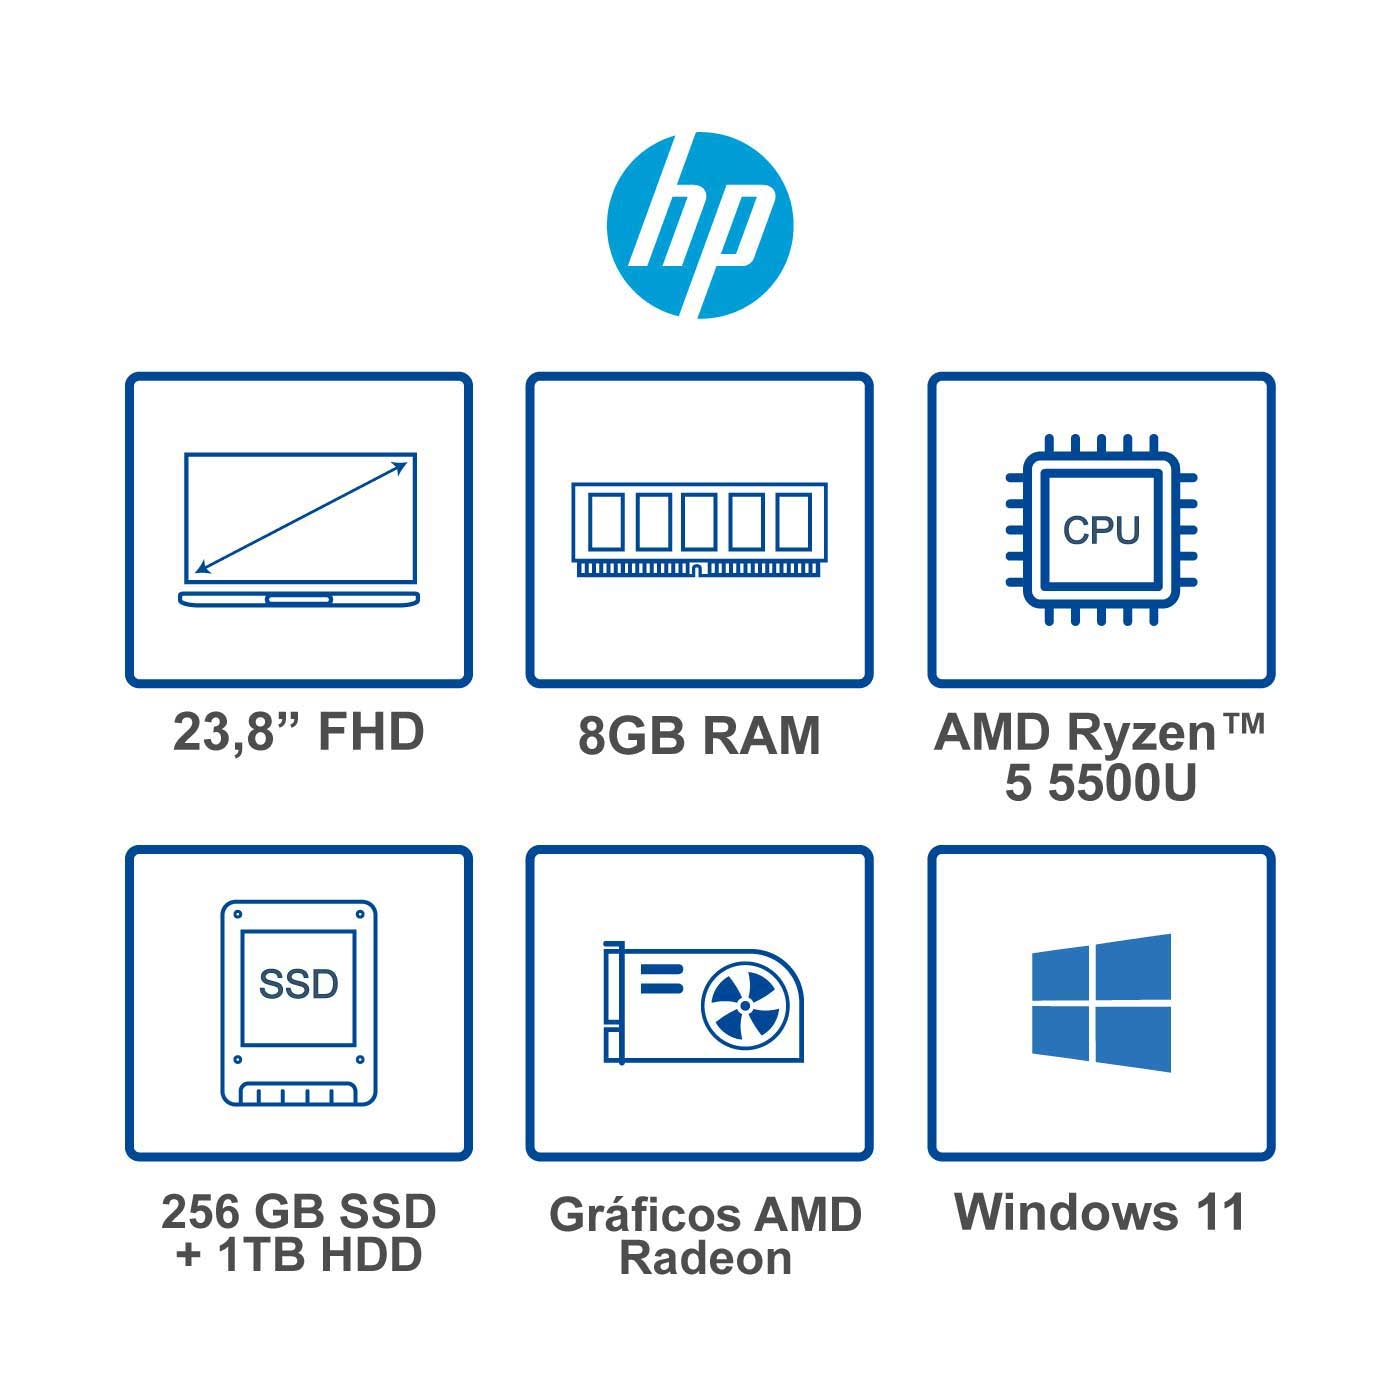 Computador All in One HP 23.8" Pulgadas cb0013la - AMD Ryzen 5 - RAM 8GB - Disco SSD 256 GB + Disco HDD 1 TB - Negro